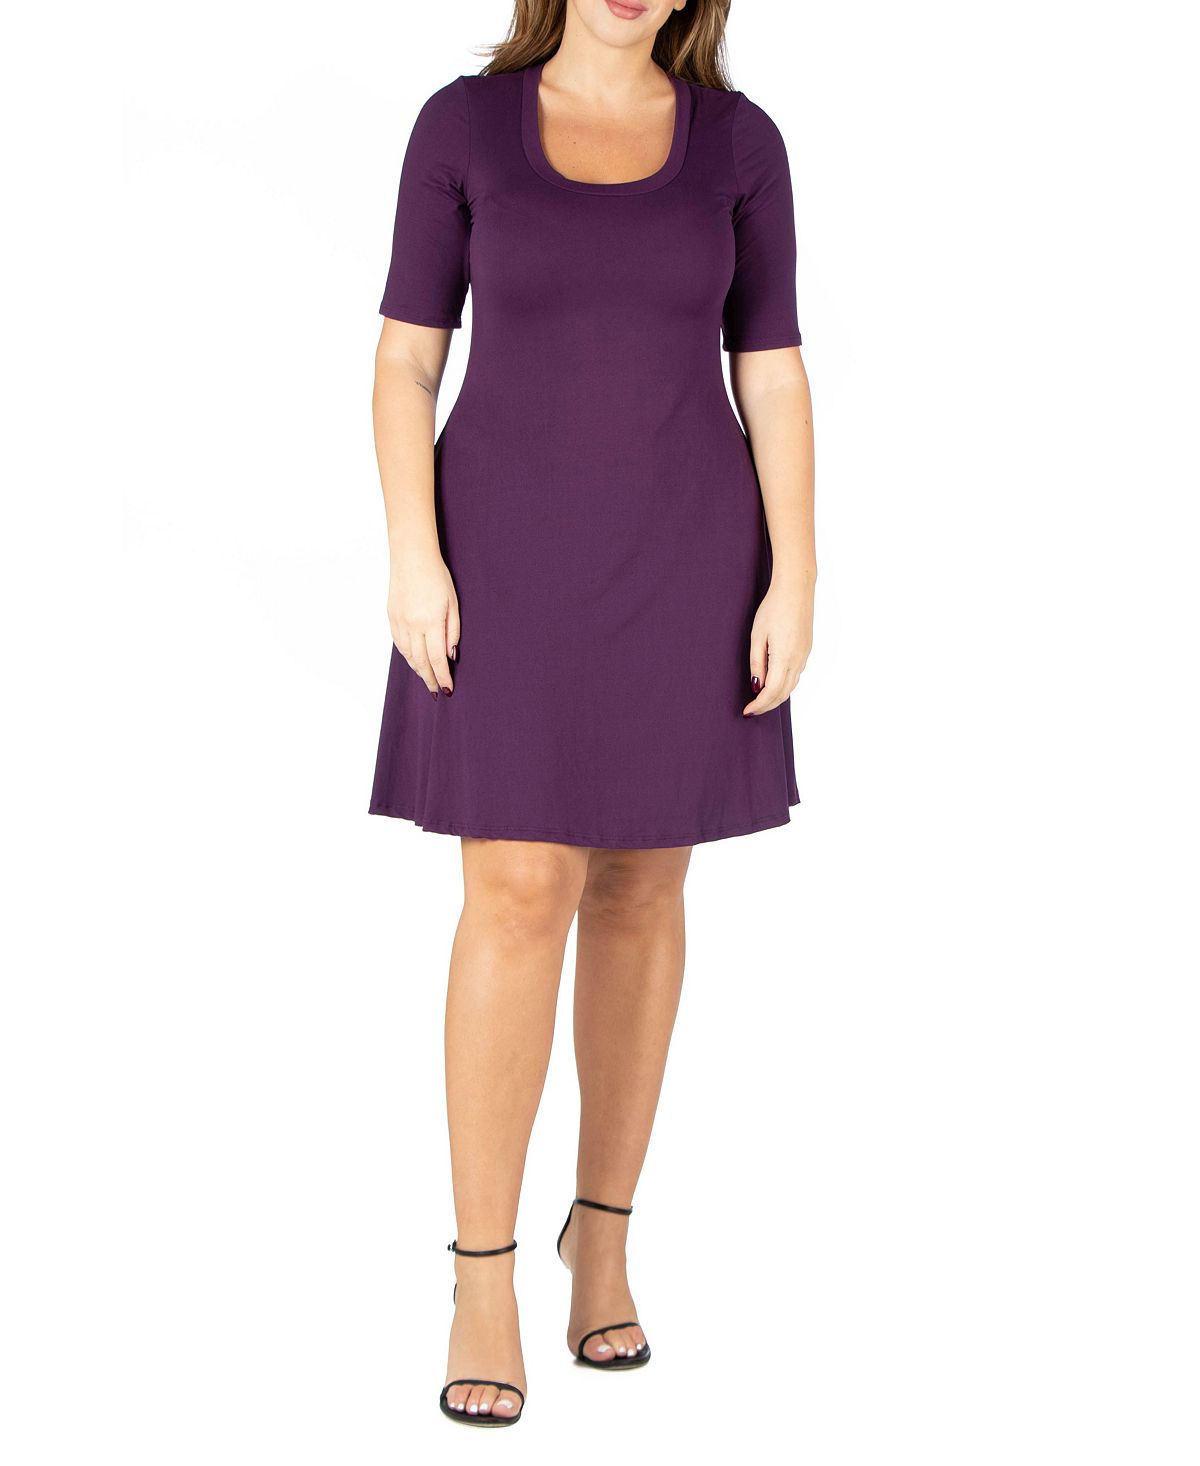 Женское платье больших размеров с расклешенными рукавами и рукавами до локтя 24seven Comfort Apparel, фиолетовый